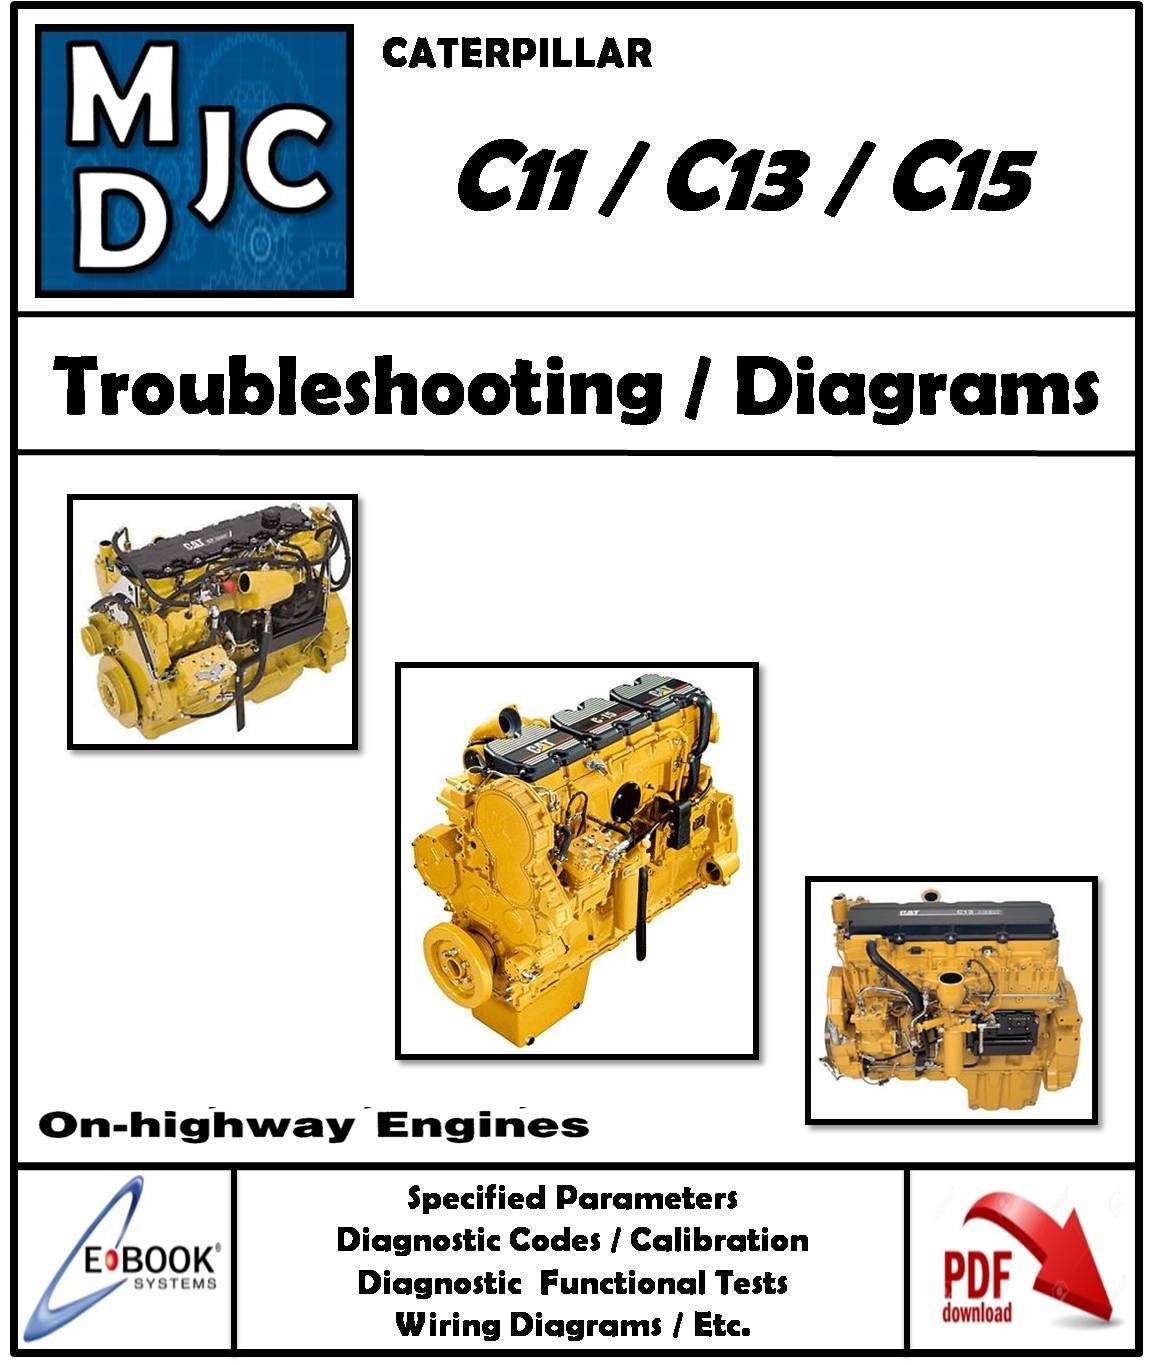 Manual de Fallas Motor Caterpillar C11 / C13 / C15